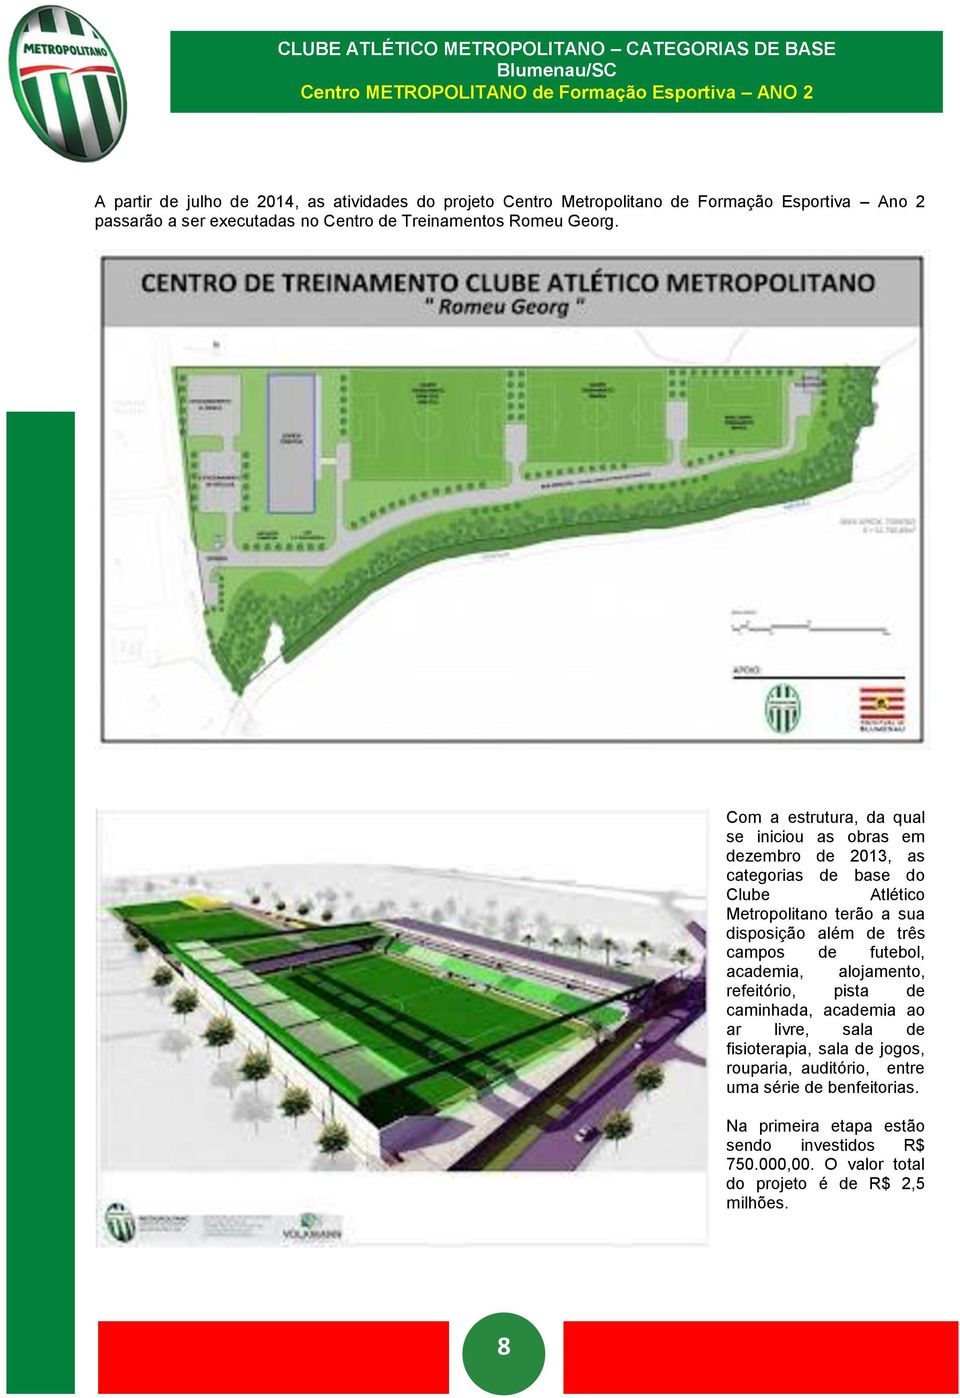 Com a estrutura, da qual se iniciou as obras em dezembro de 2013, as categorias de base do Clube Atlético Metropolitano terão a sua disposição além de